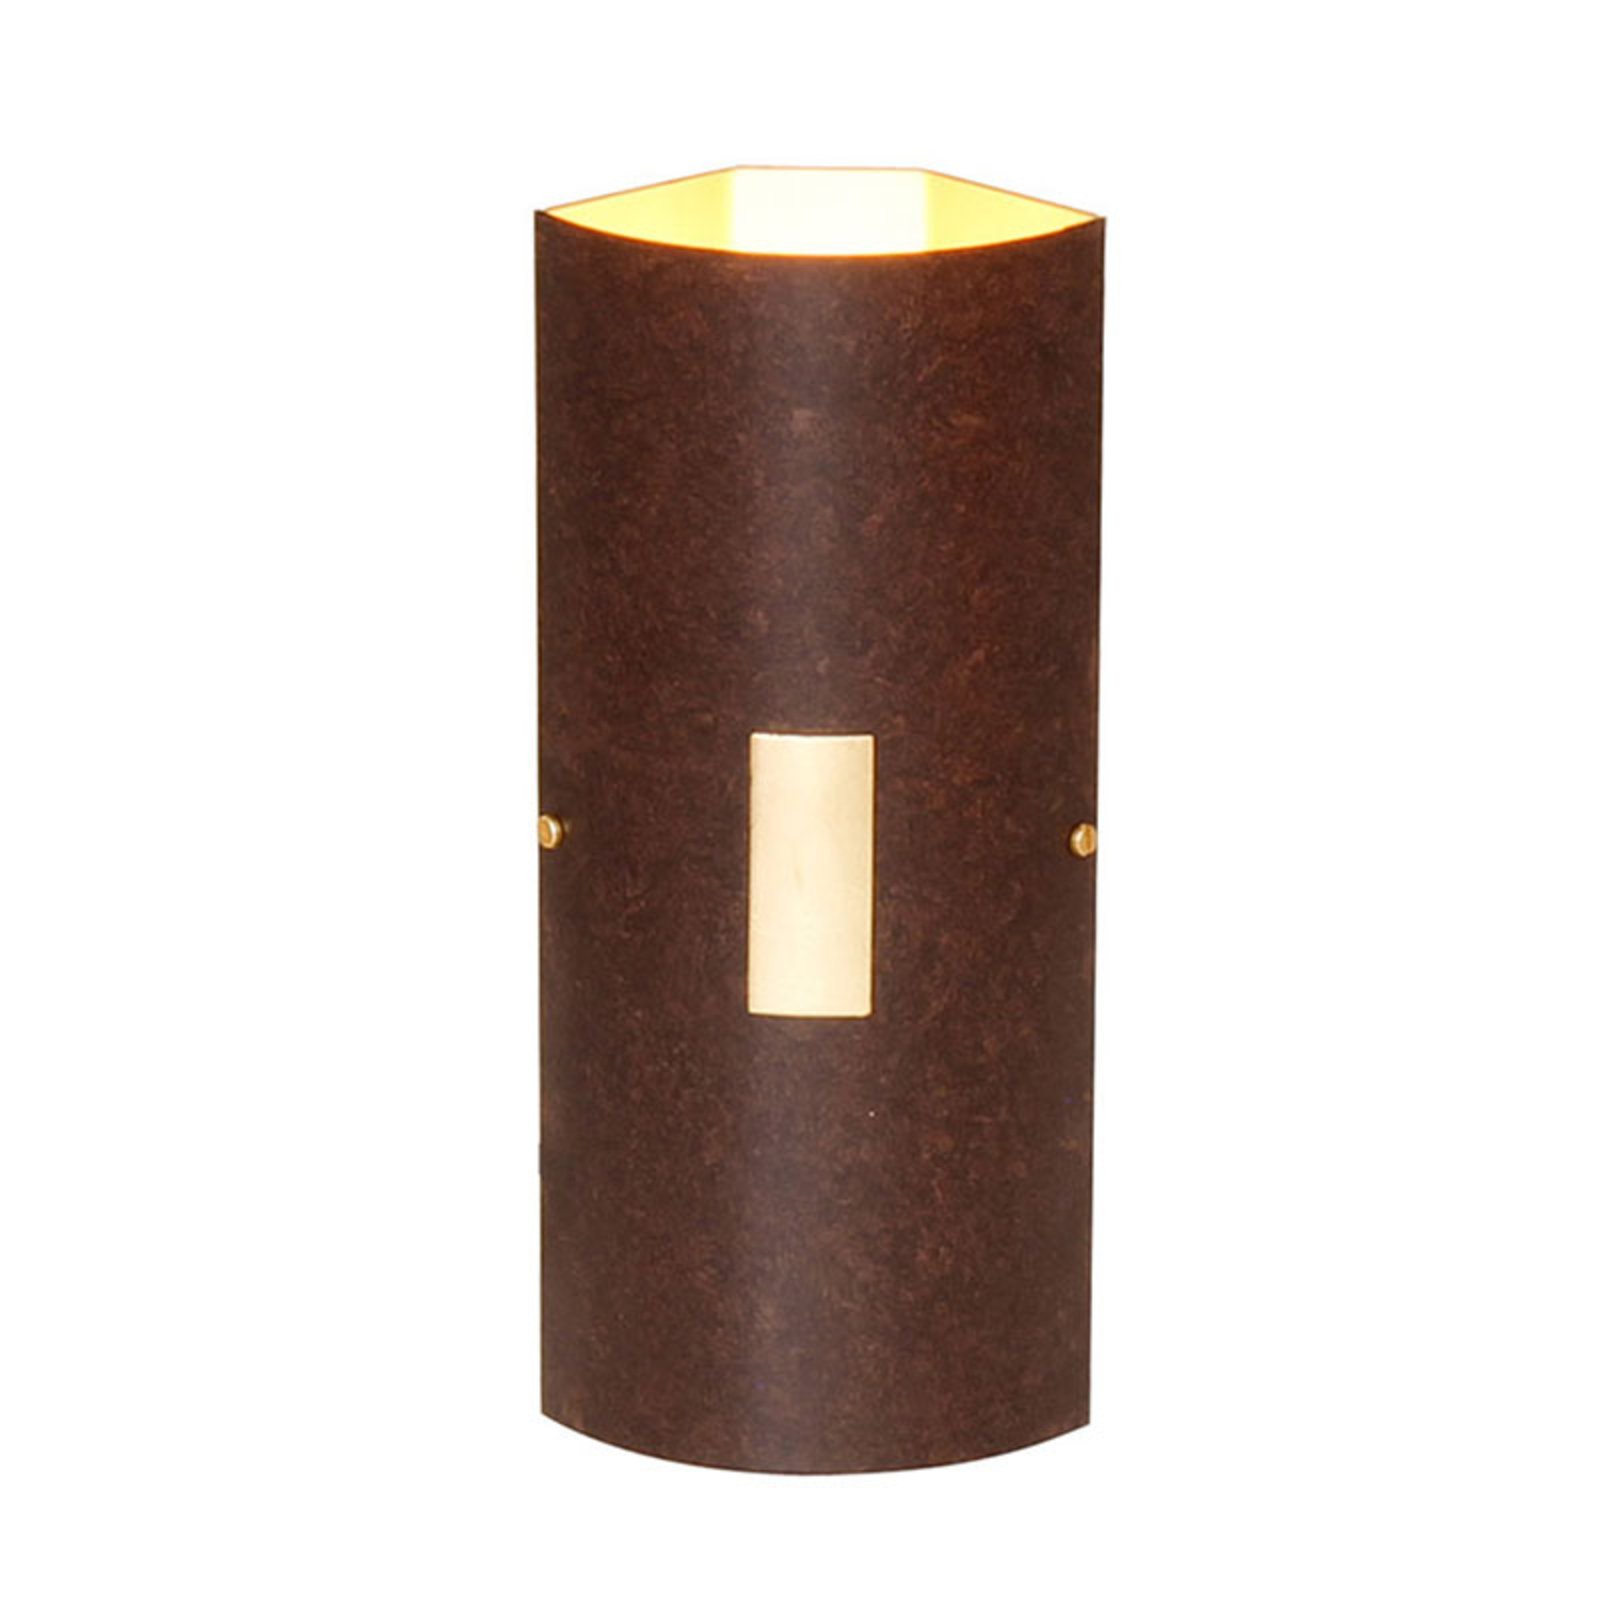 Menzel Solo væglampe, kant, brun-sort/guld